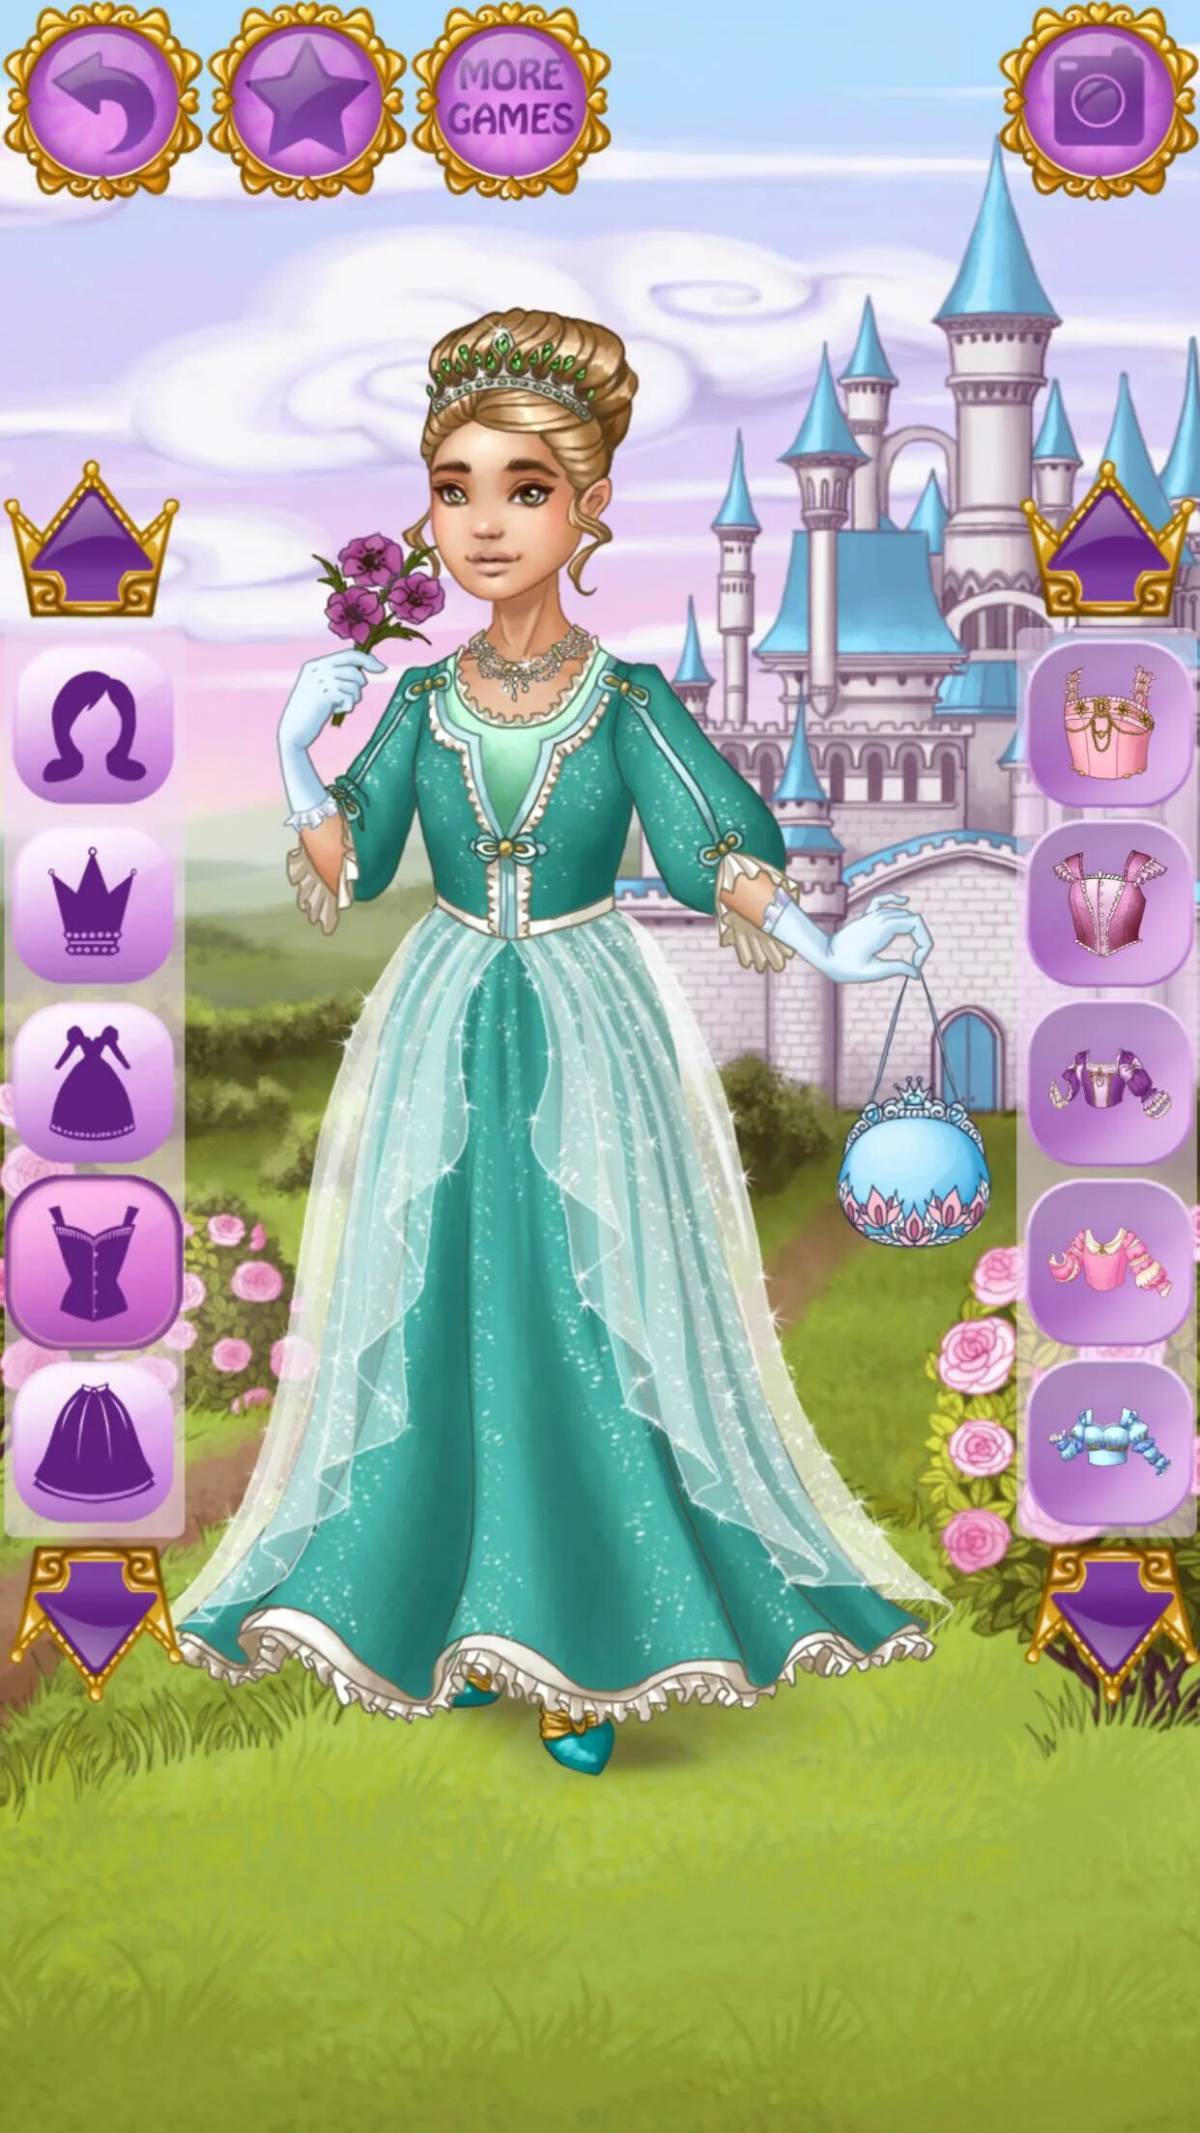 Игра принцессы похожие. Игра принцессы королевство для Золушки. Time Princess игра. Одевалки для девочек принцессы. Принцесса Казуальные игры.